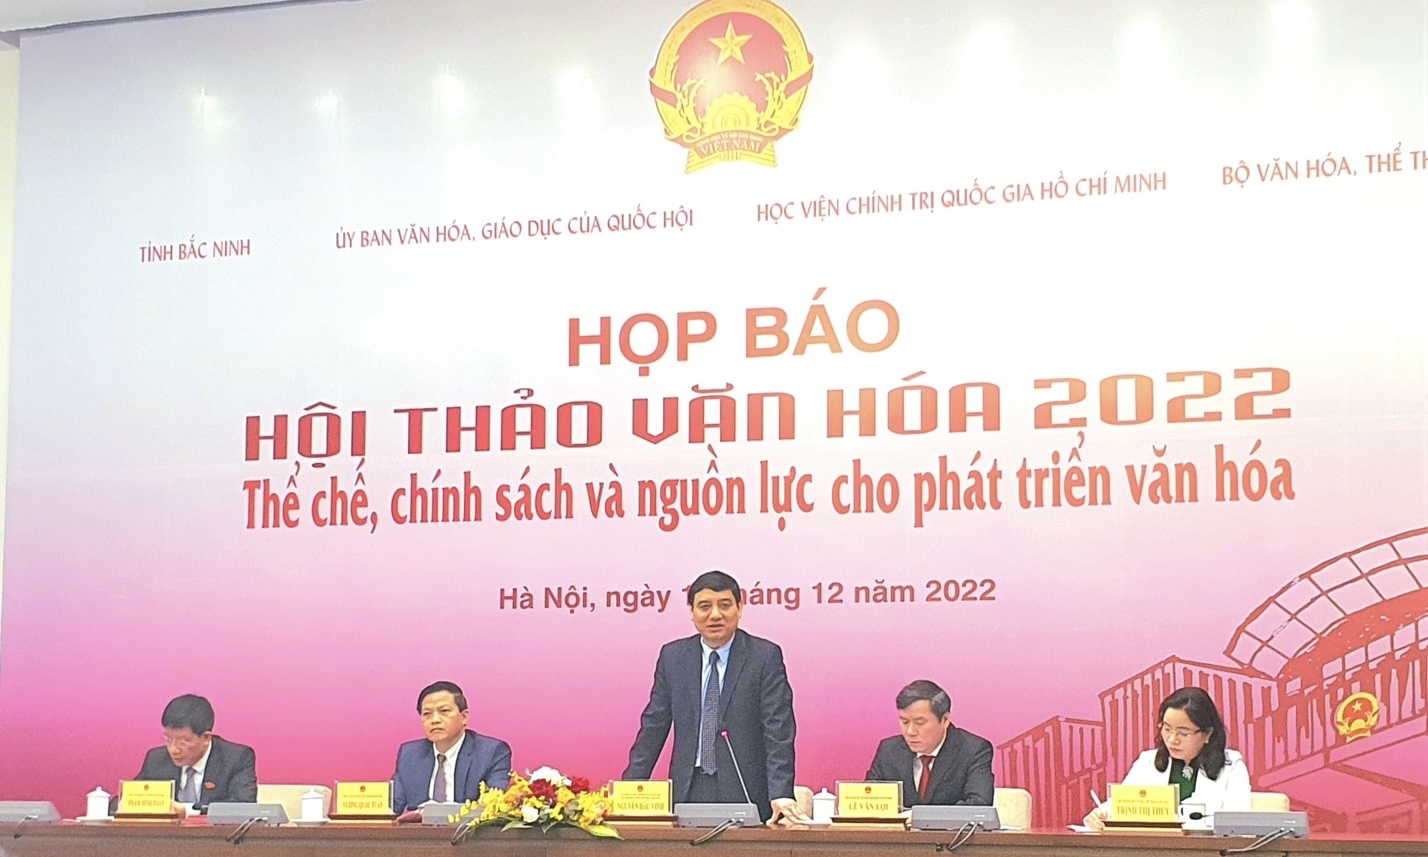 Sắp diễn ra Hội thảo Văn hoá năm 2022 tại thành phố Bắc Ninh